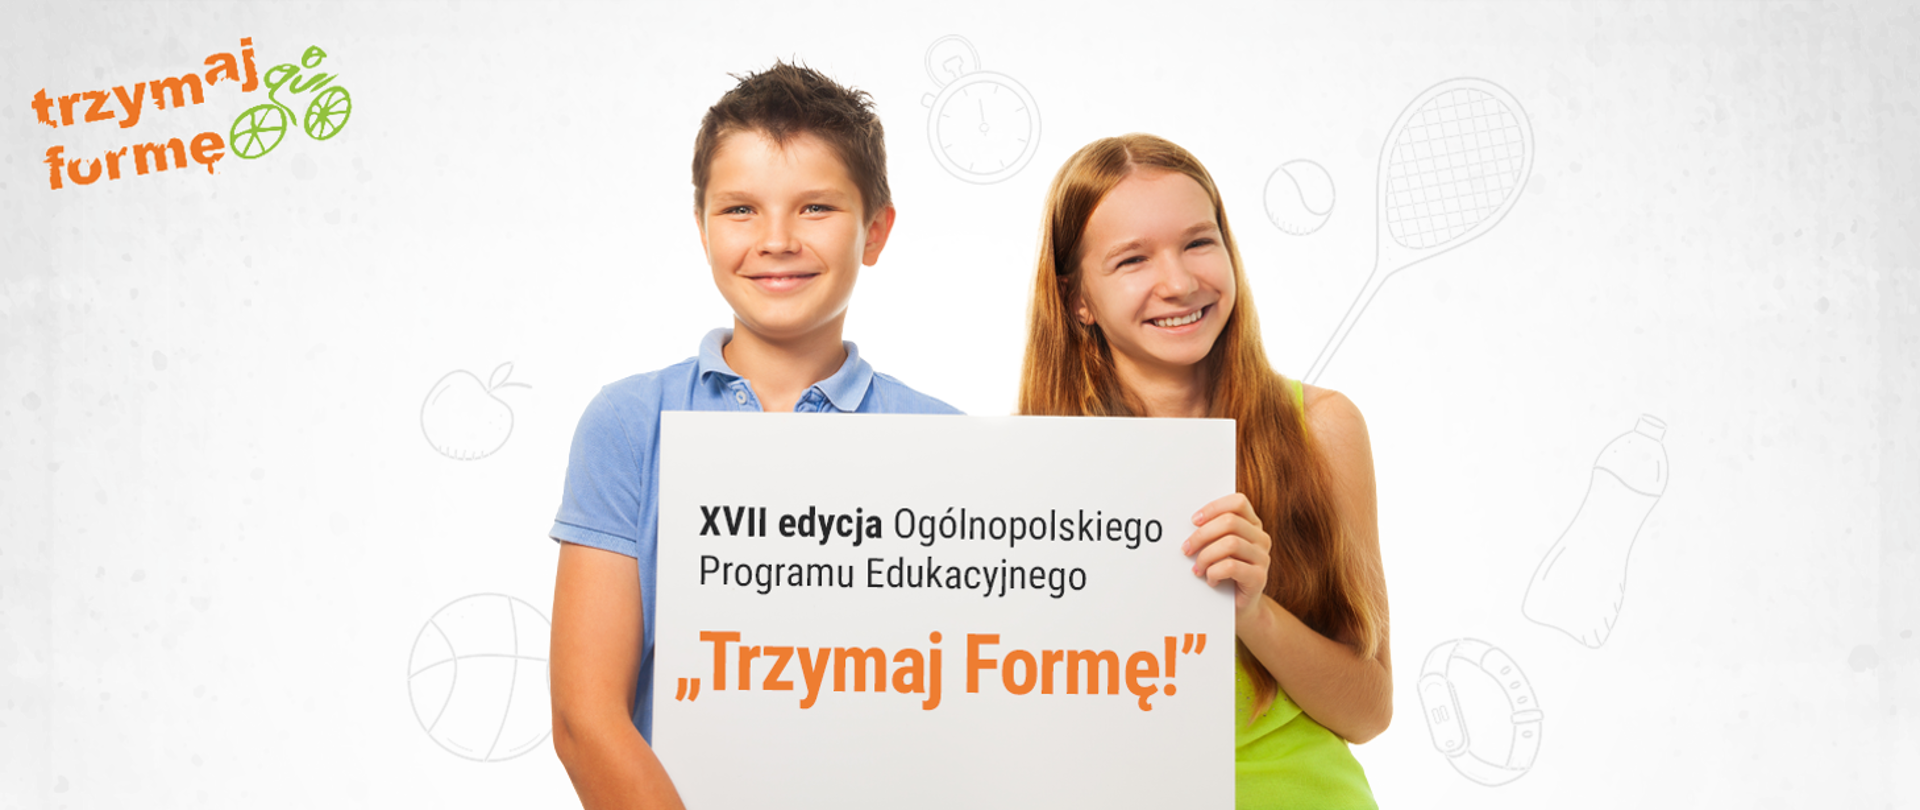 Chłopiec i dziewczynka trzymają kartkę z napisem "XVII edycja Ogólnopolskiego Programu Edukacyjnego "Trzymaj Formę!"